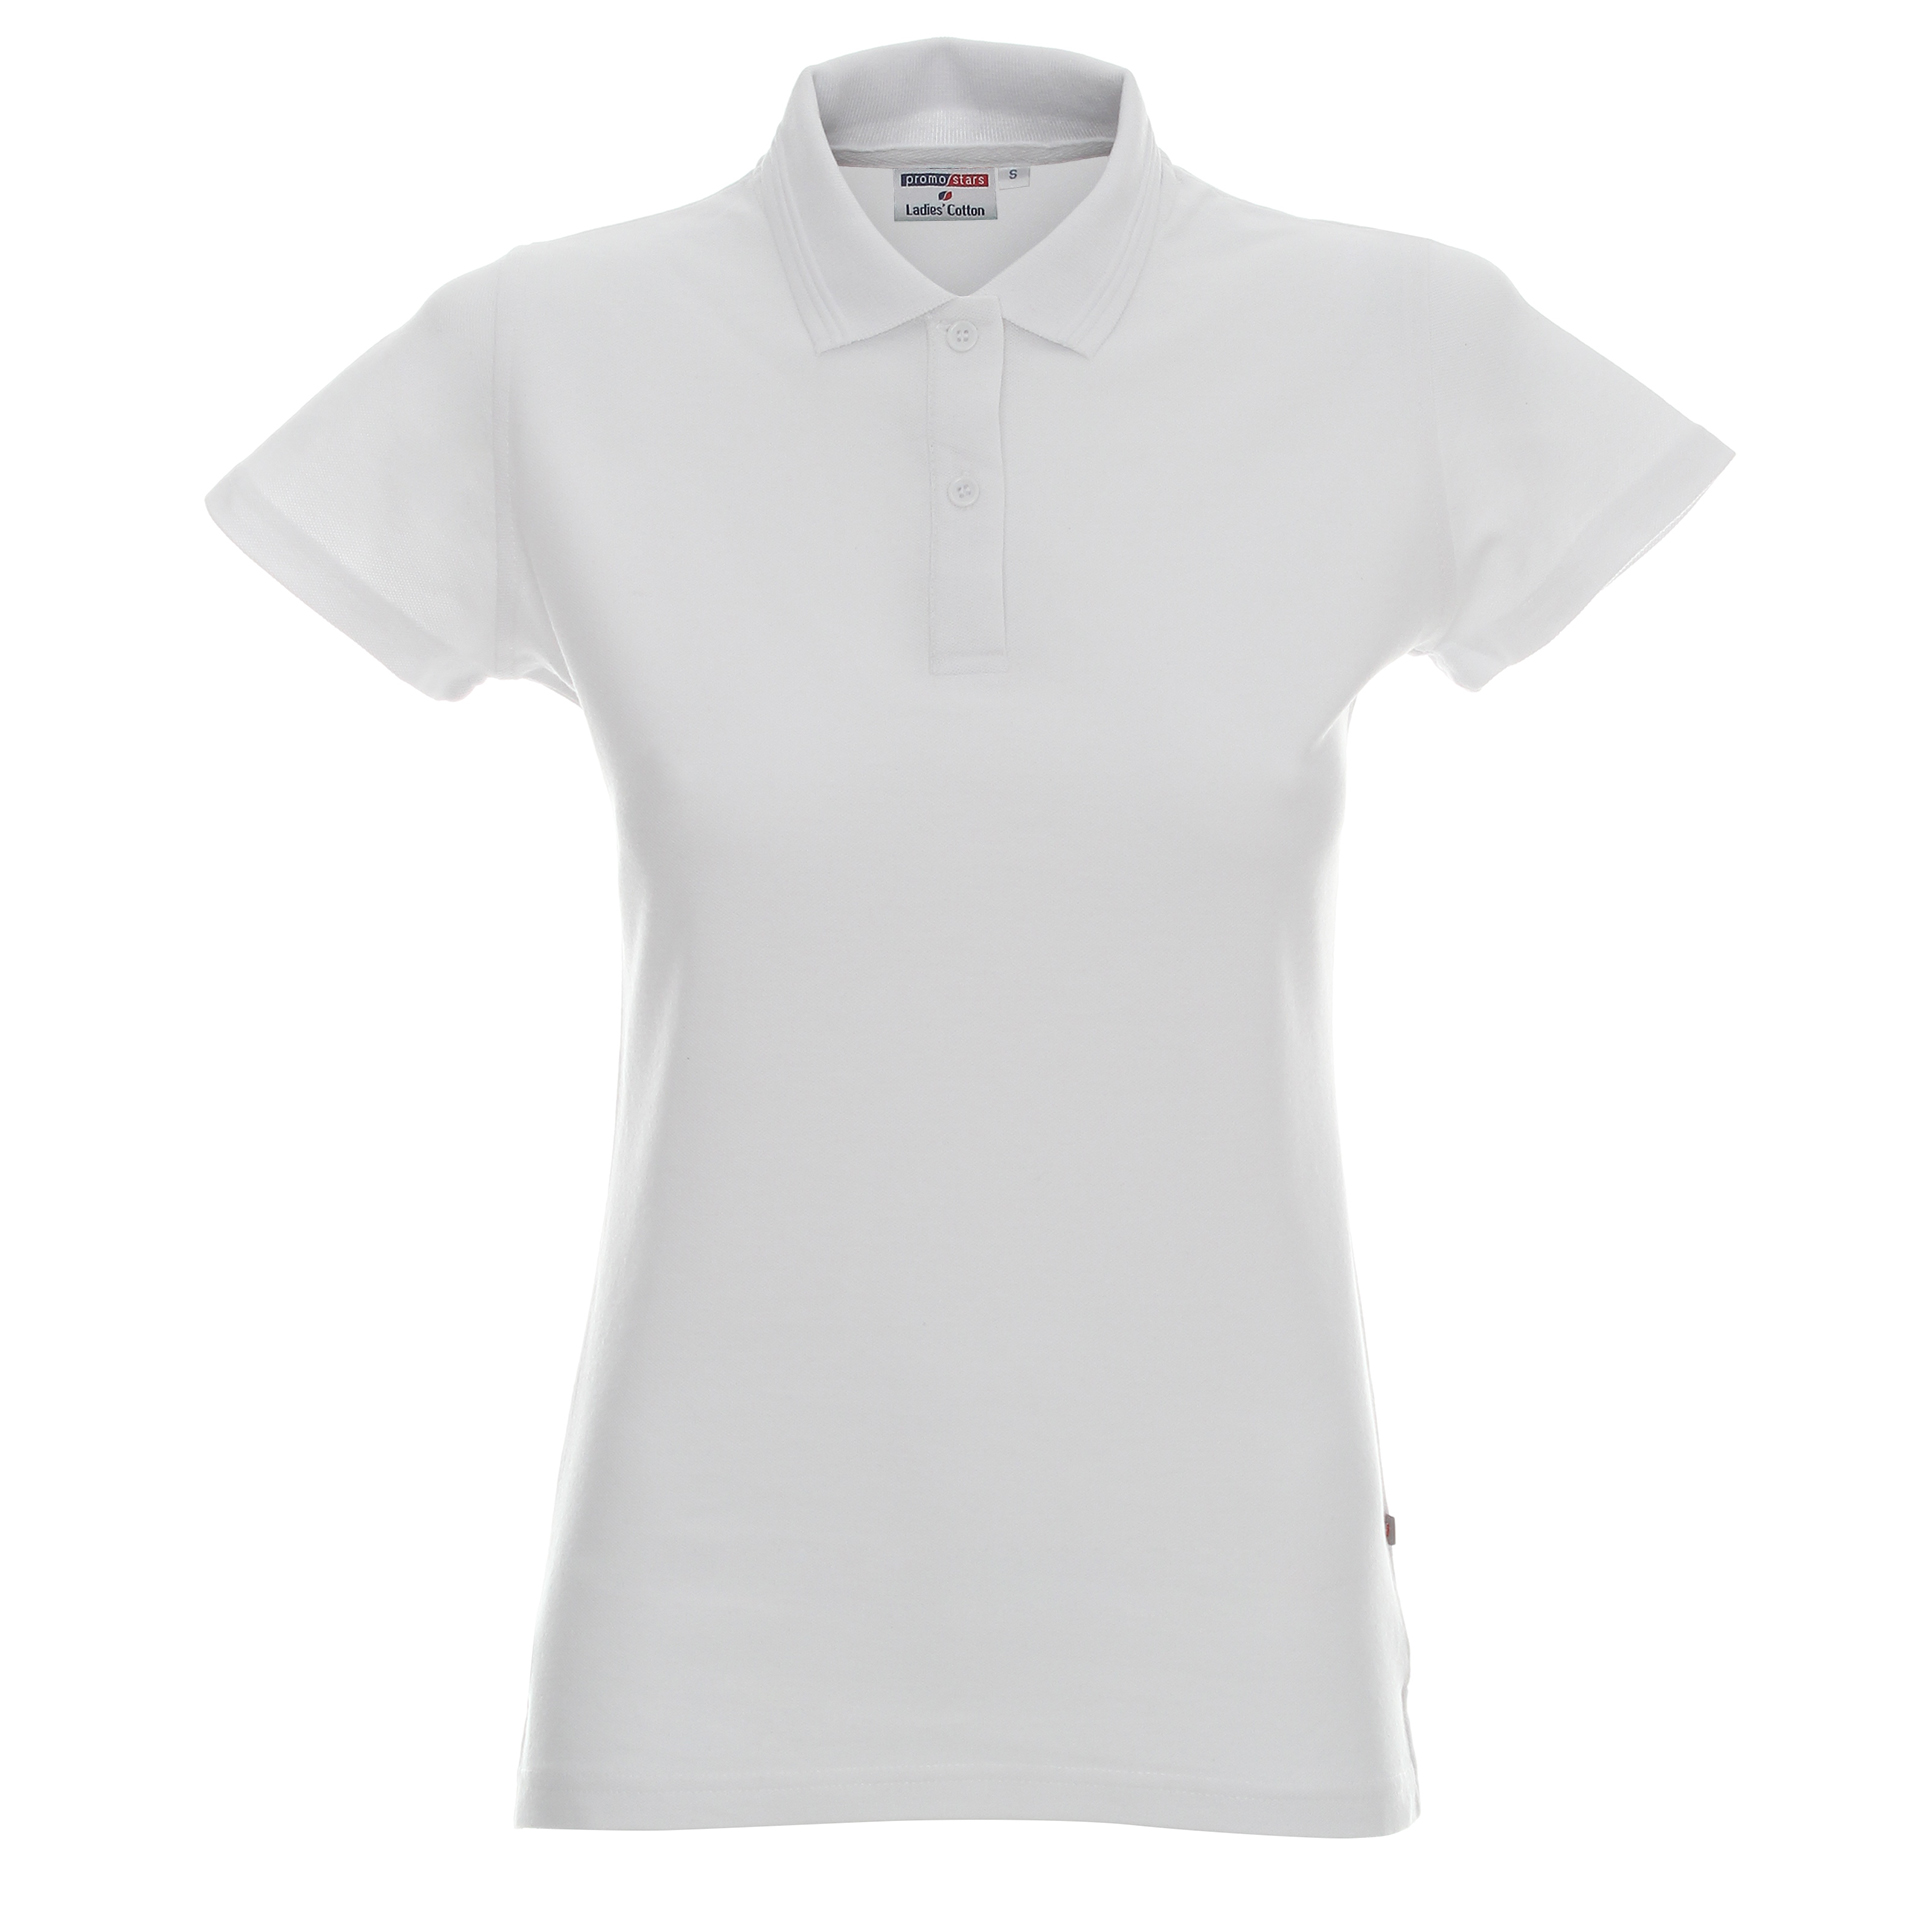 Koszulka Promostars Polo Ladies Cotton - biała